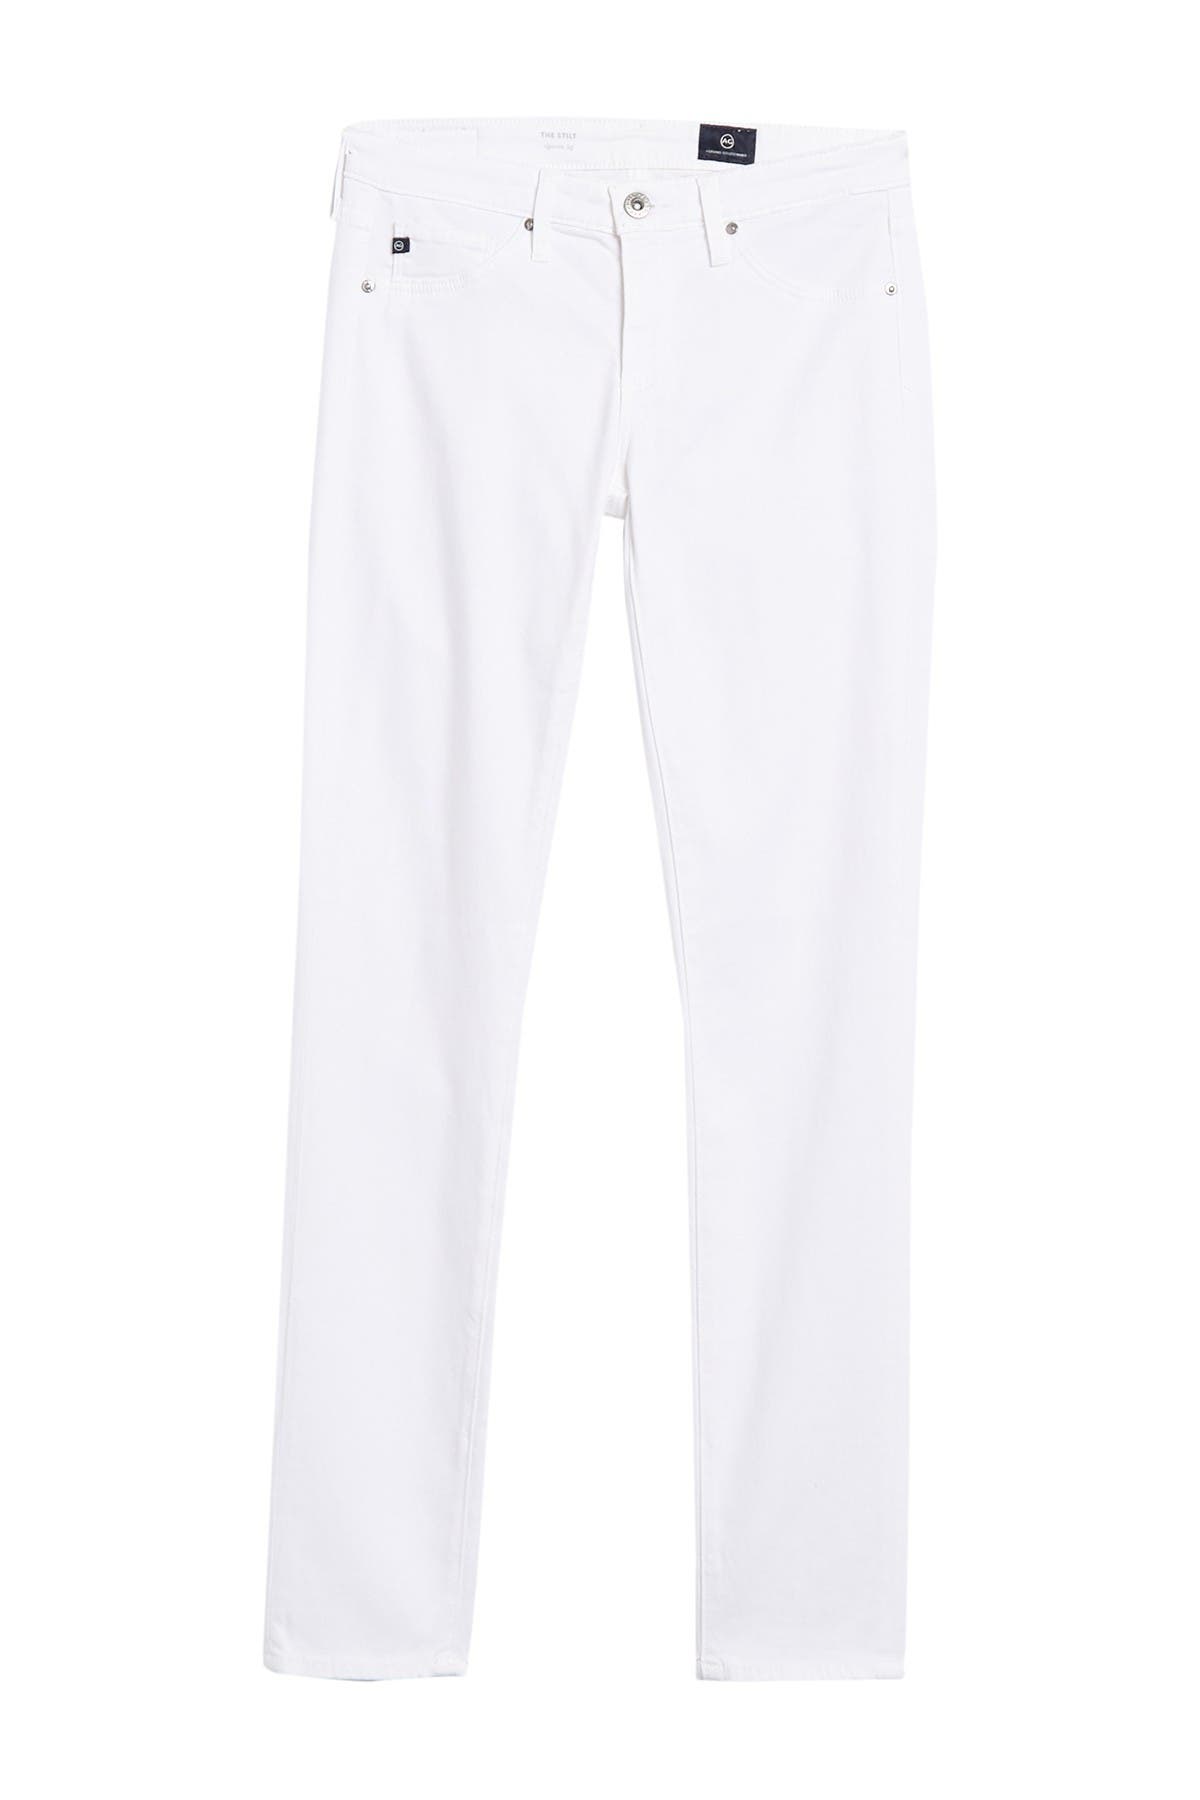 ag white pants